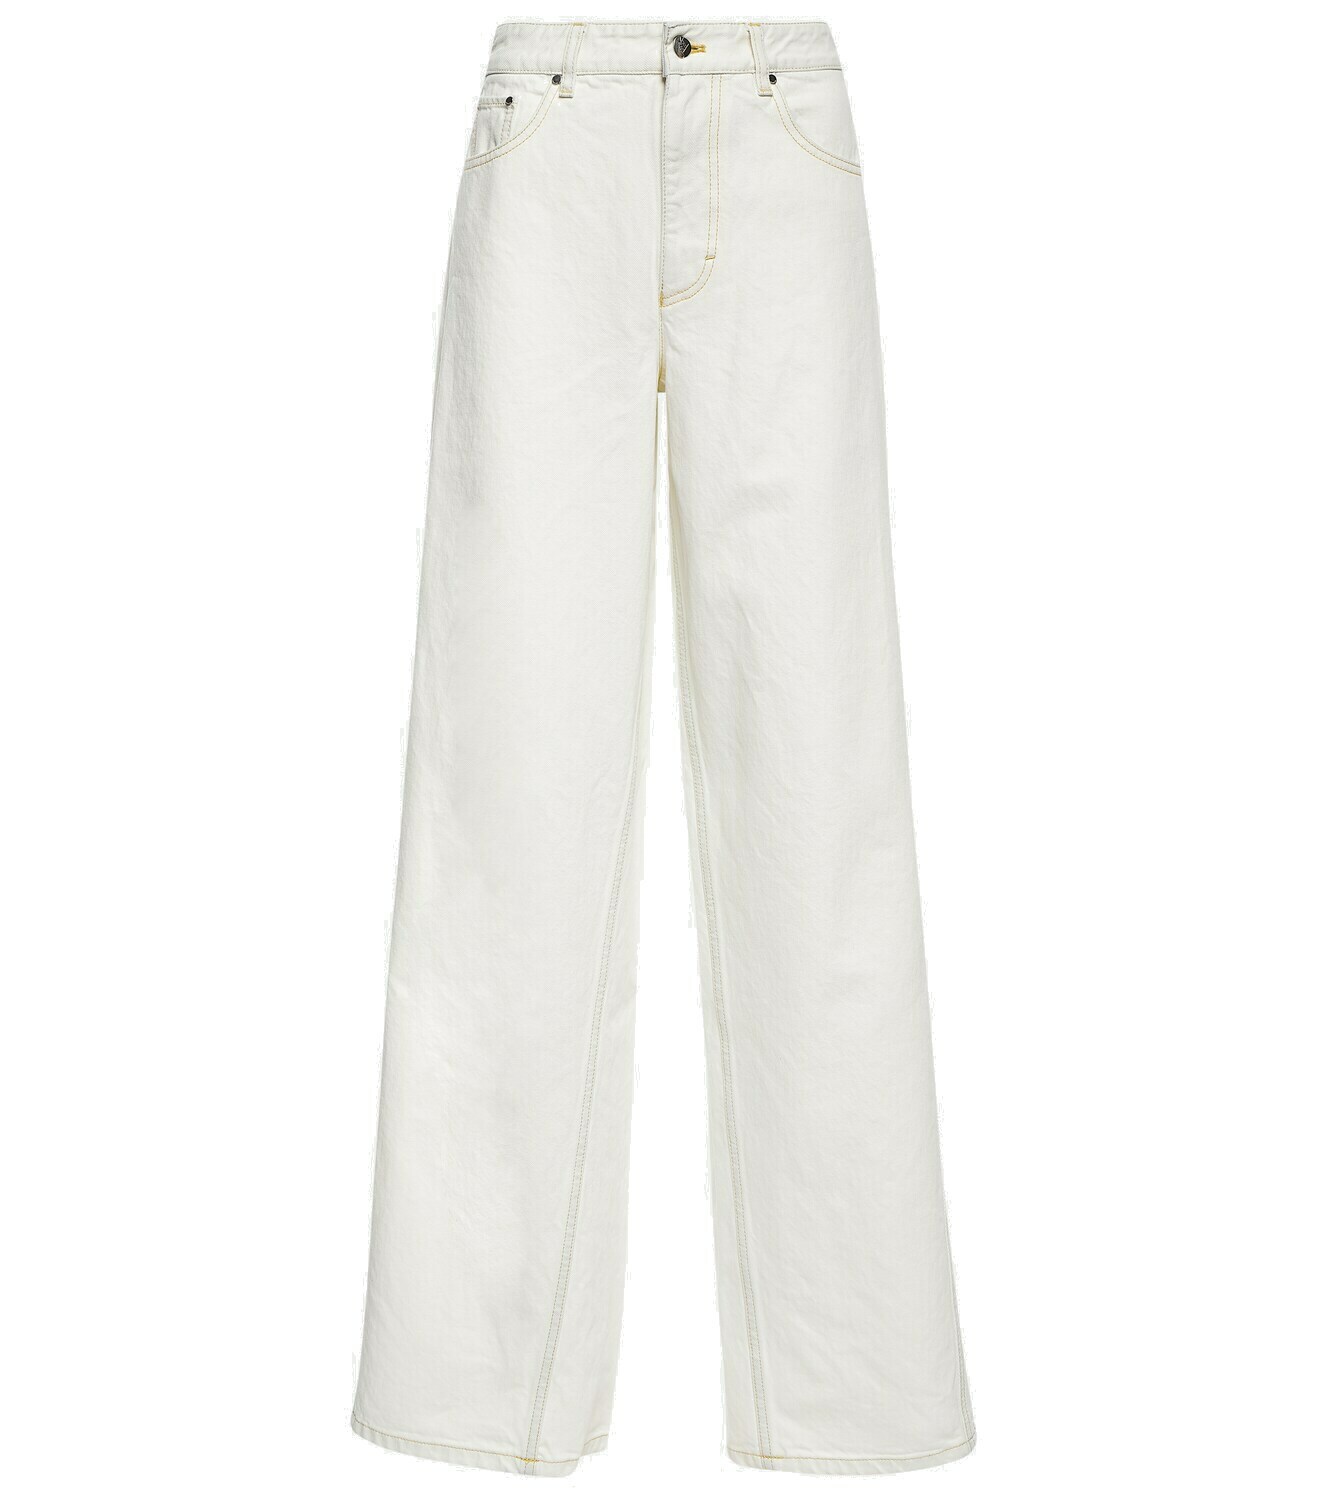 Moncler Genius - Mid-rise wide-leg cotton pants Moncler Genius